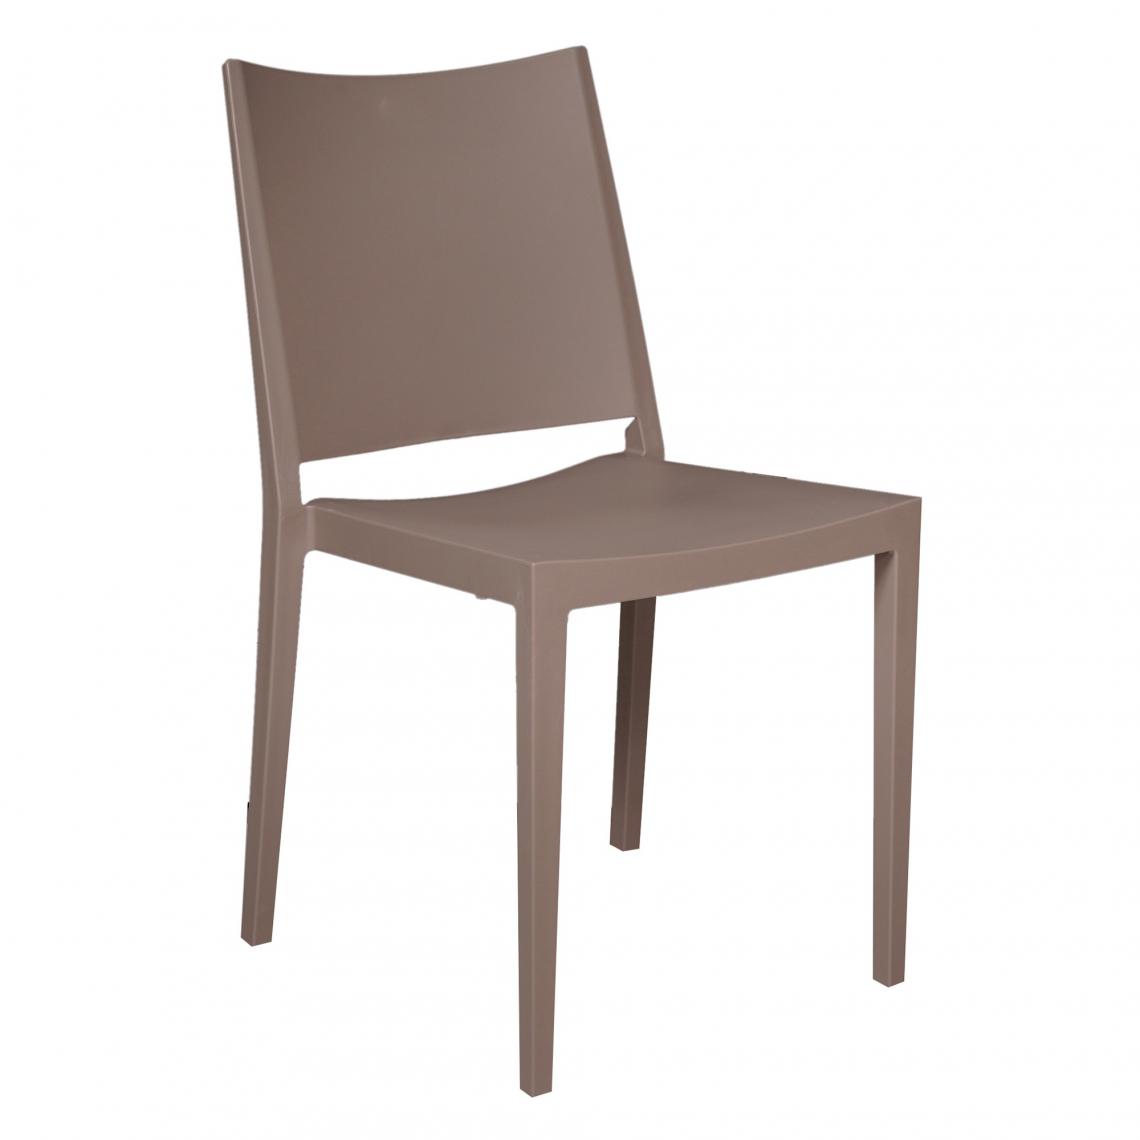 Alter - Chaise empilable classique sans accoudoirs, pour intérieur et extérieur, en polypropylène, cm 46x56h82, couleur Gris - Chaises